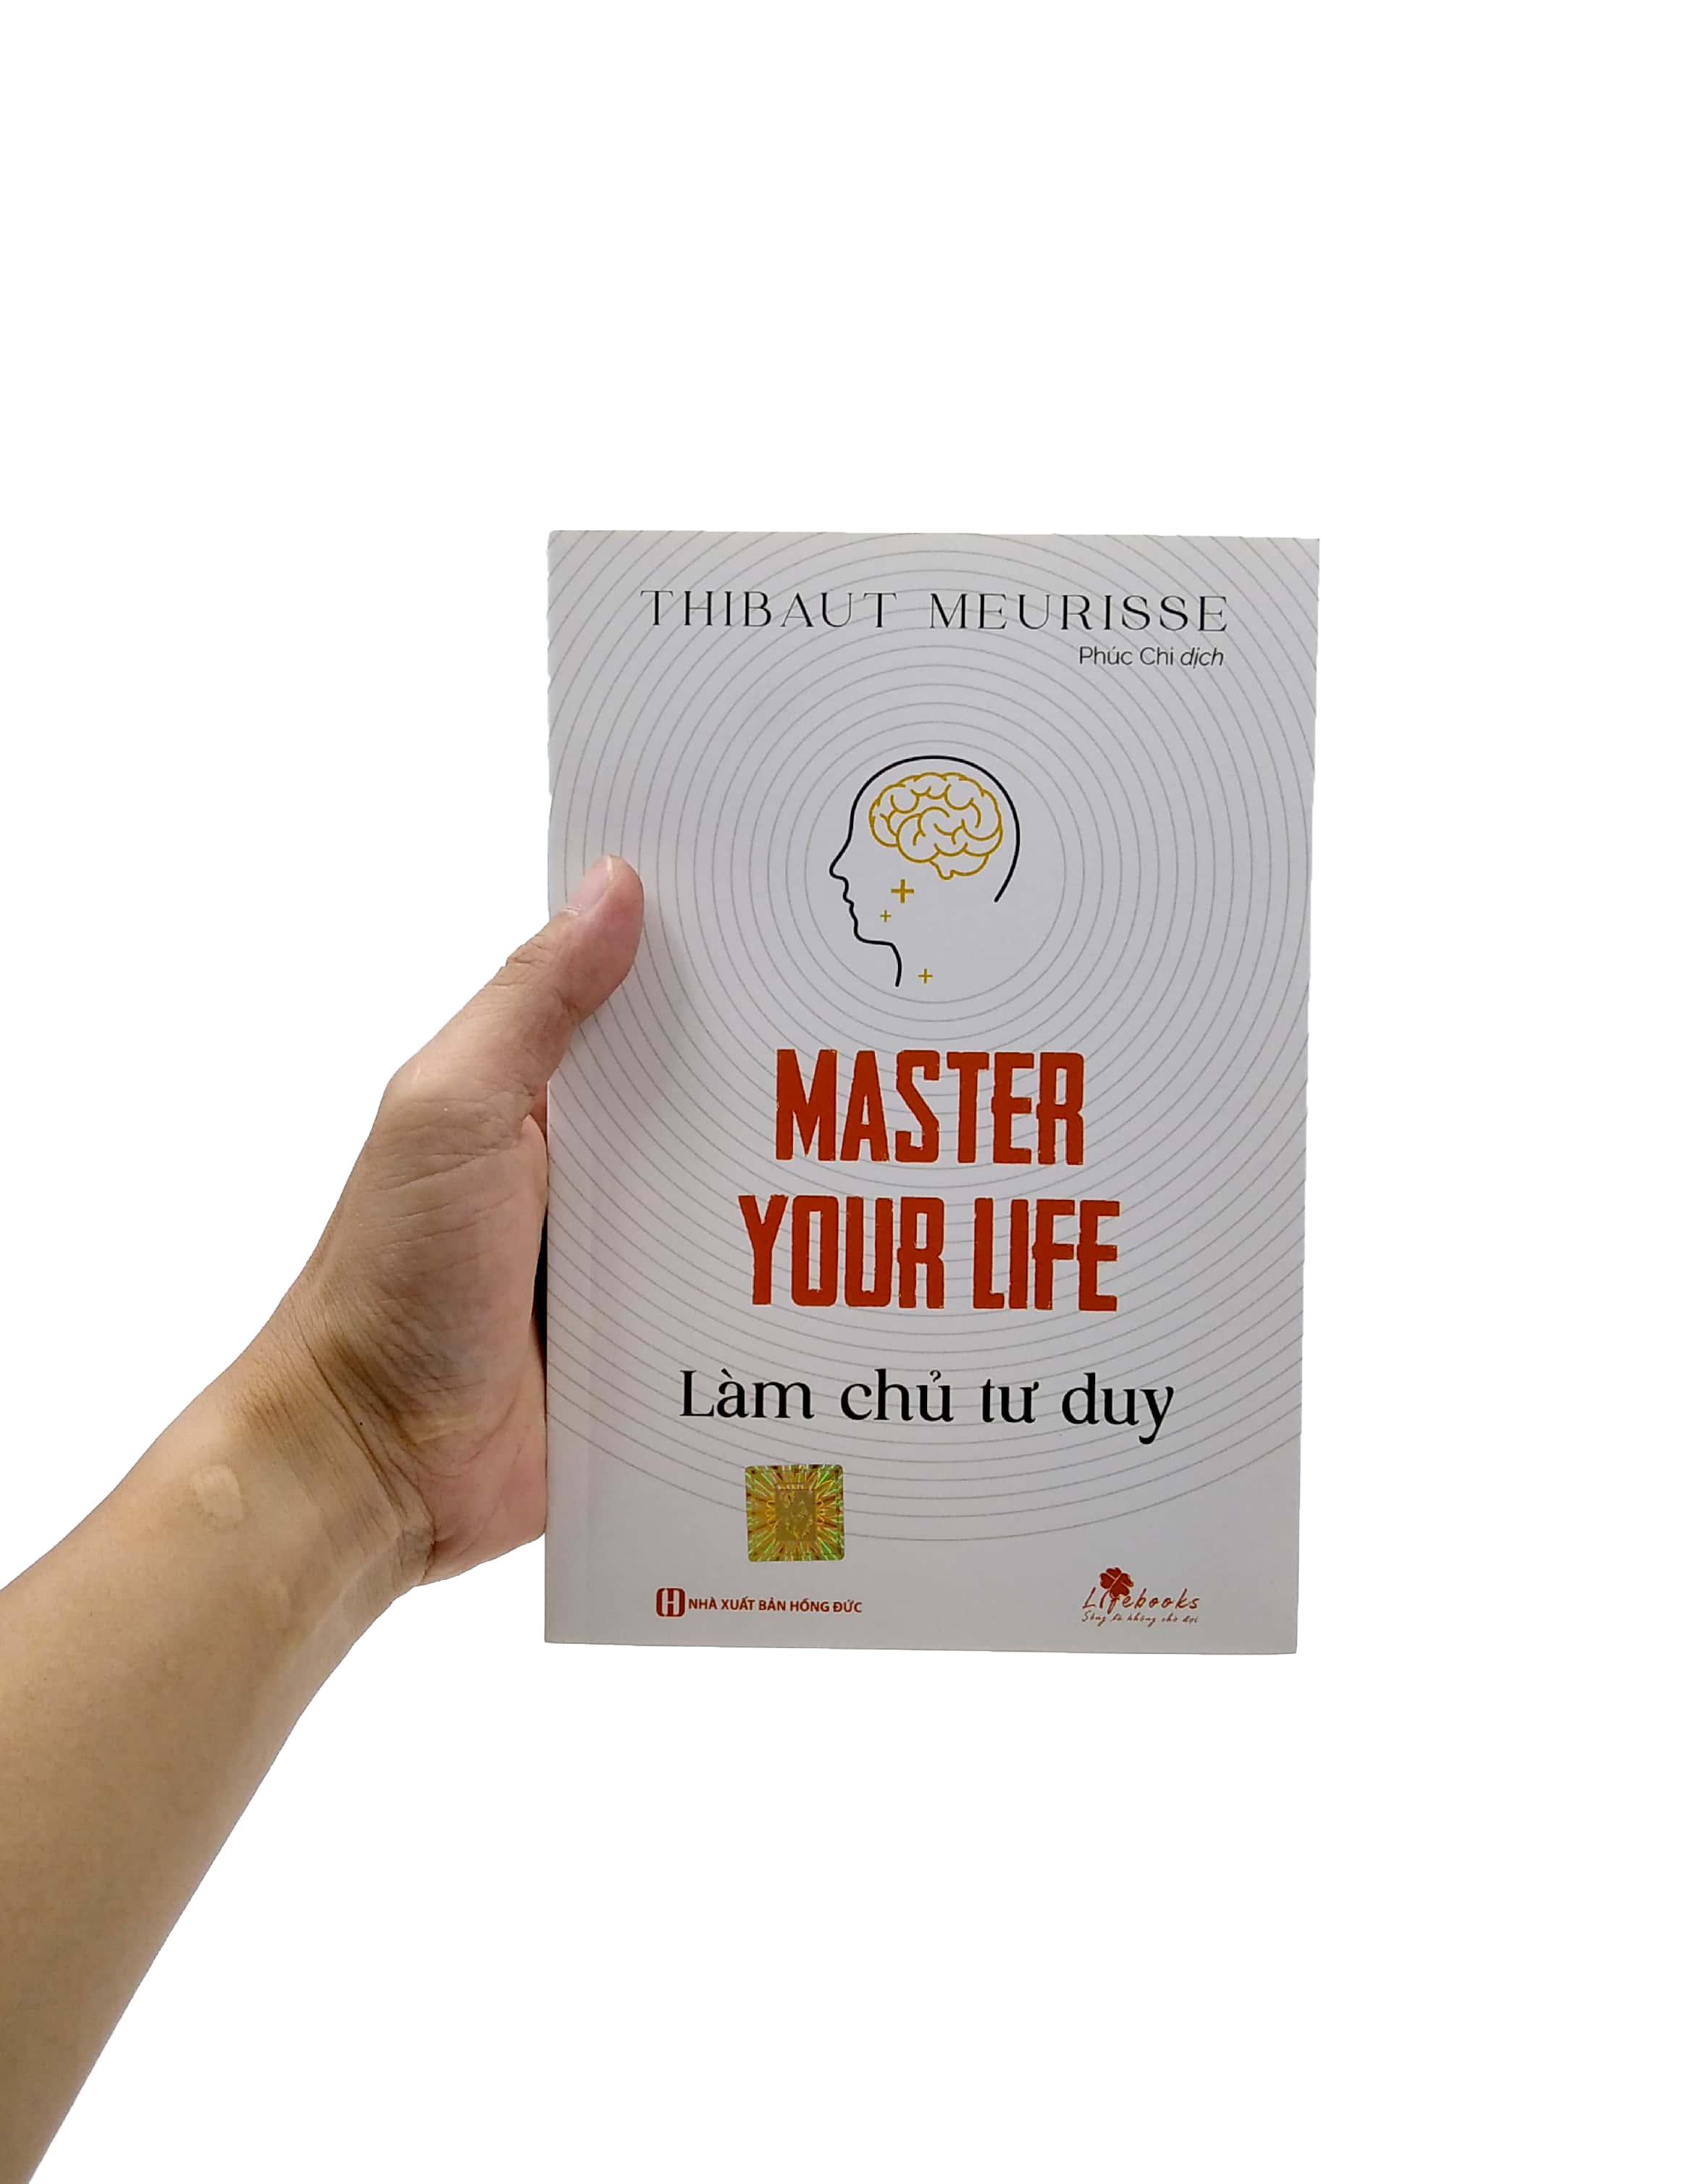 Master Your Life - Làm Chủ Tư Duy